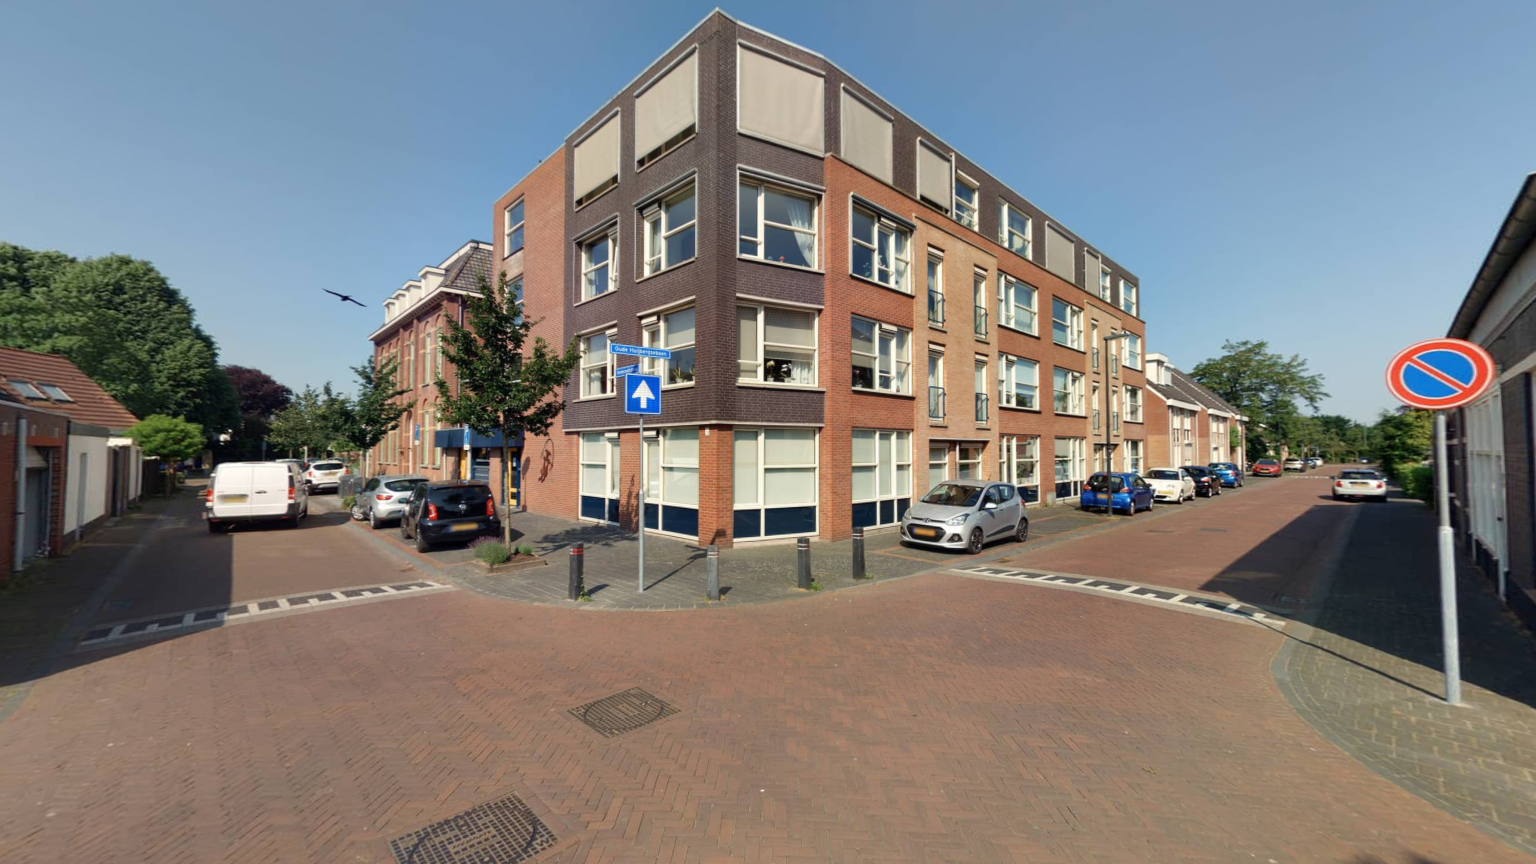 Rembrandtstraat 129, 4625 CW Bergen op Zoom, Nederland